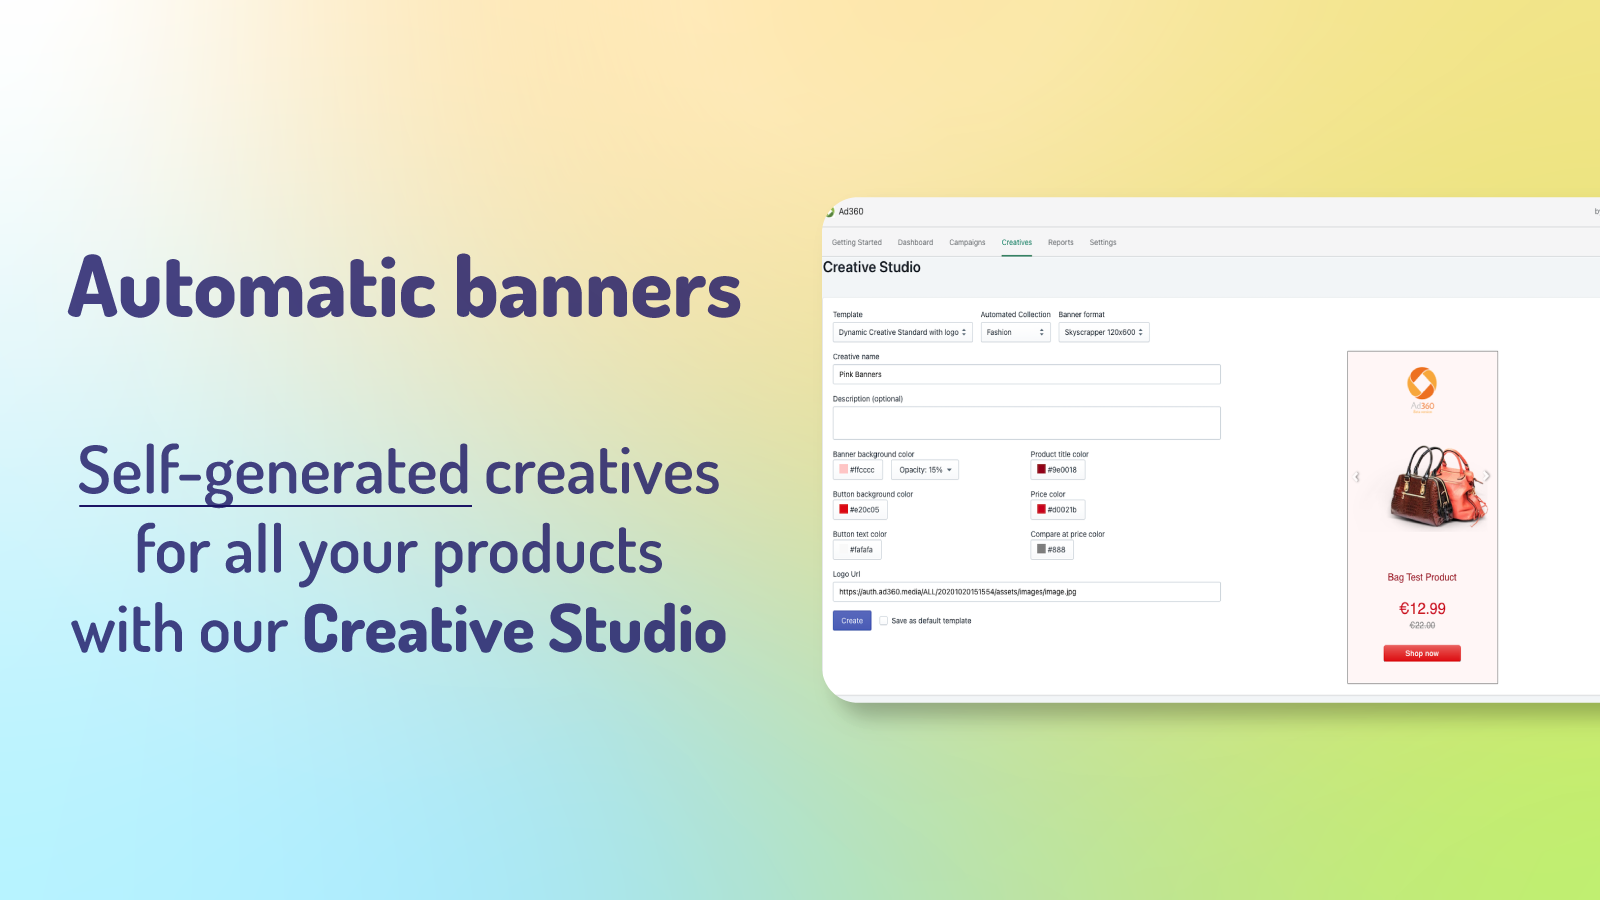 Automatiska banners: Självgenererade kreativ för alla produkter